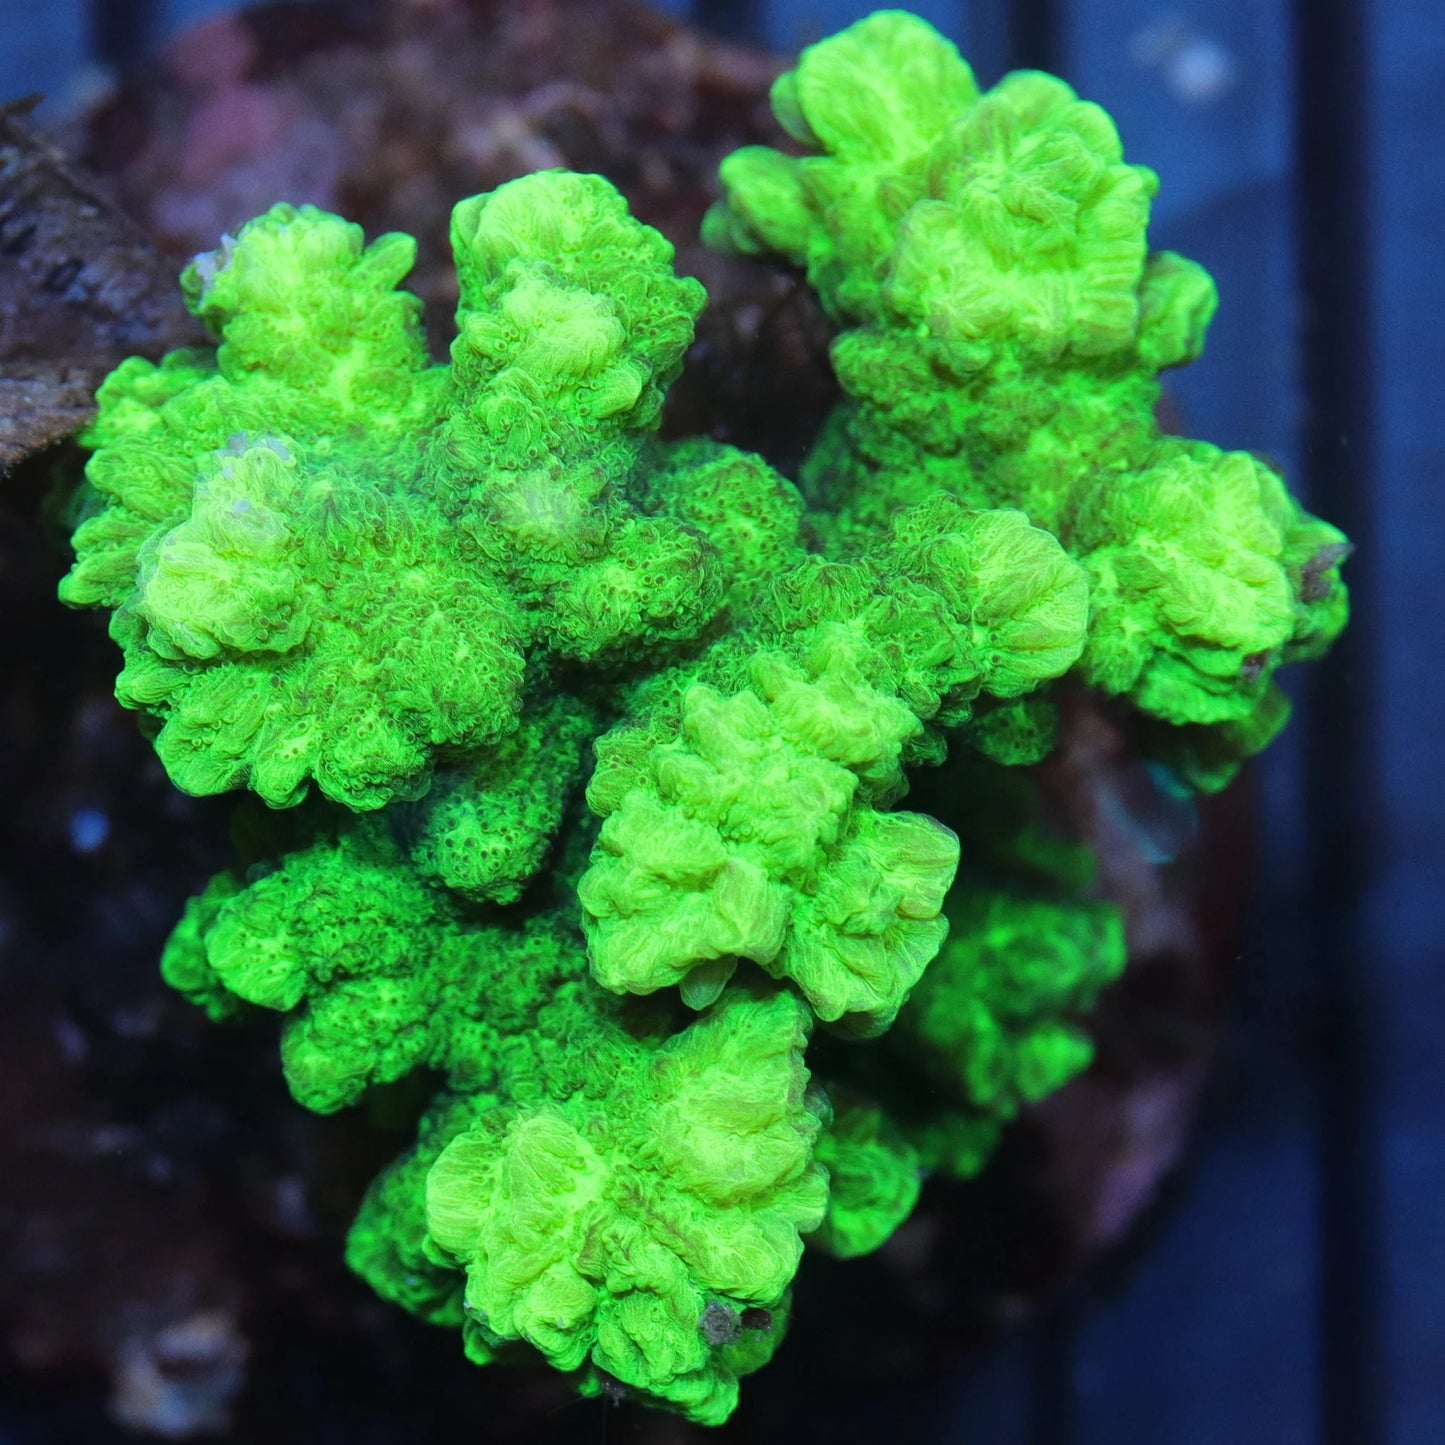 Horn Corals (Hydnophora, Merulina sp.)